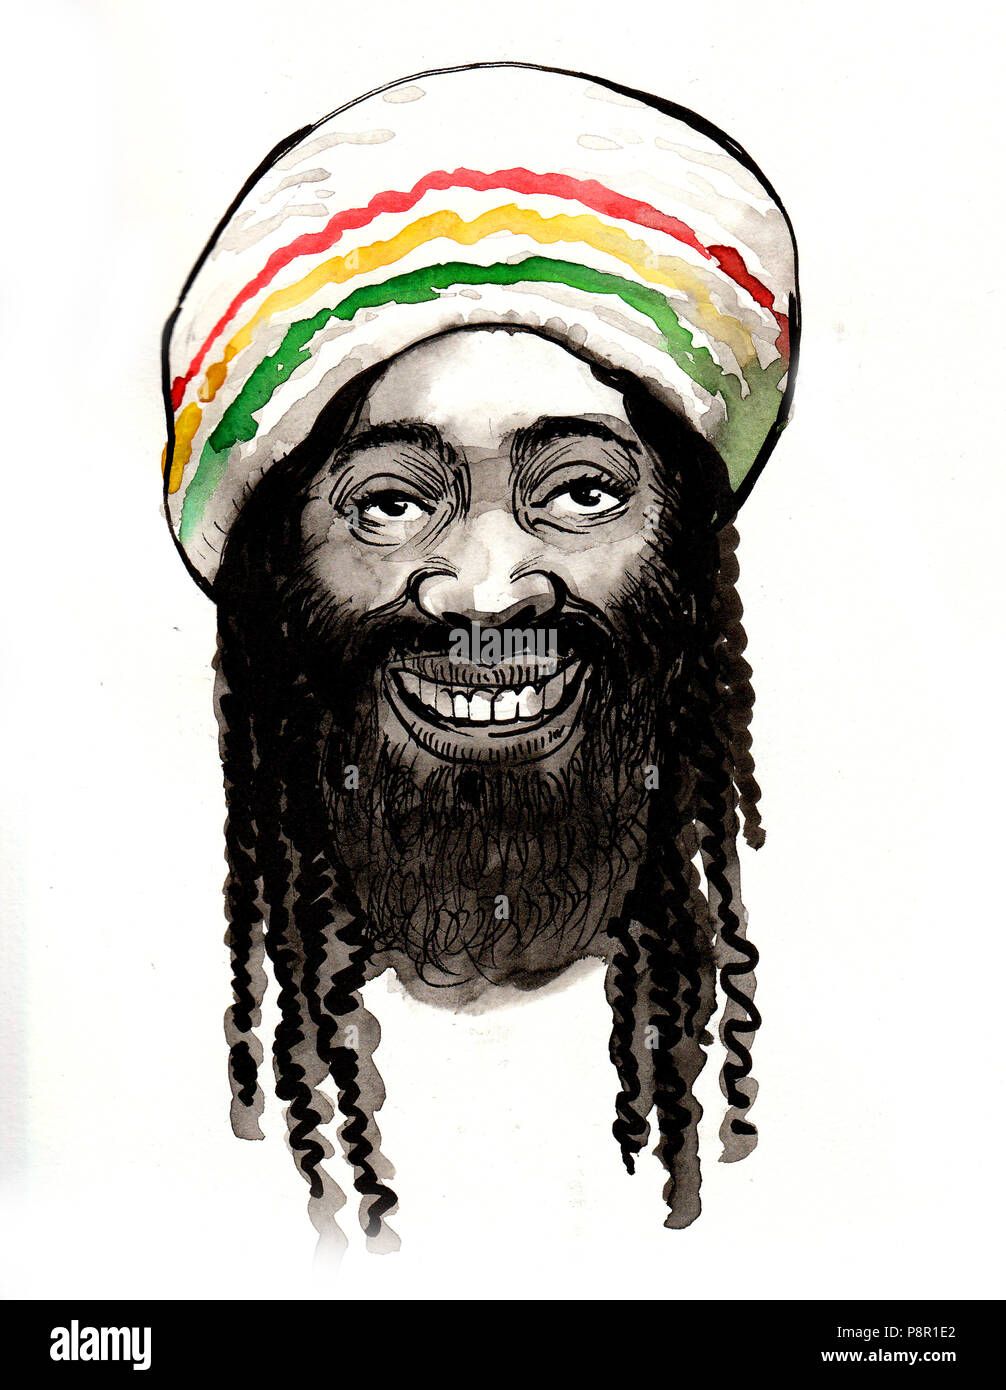 Heureux homme Rastafari avec dreads. Encre et aquarelle illustration Banque D'Images